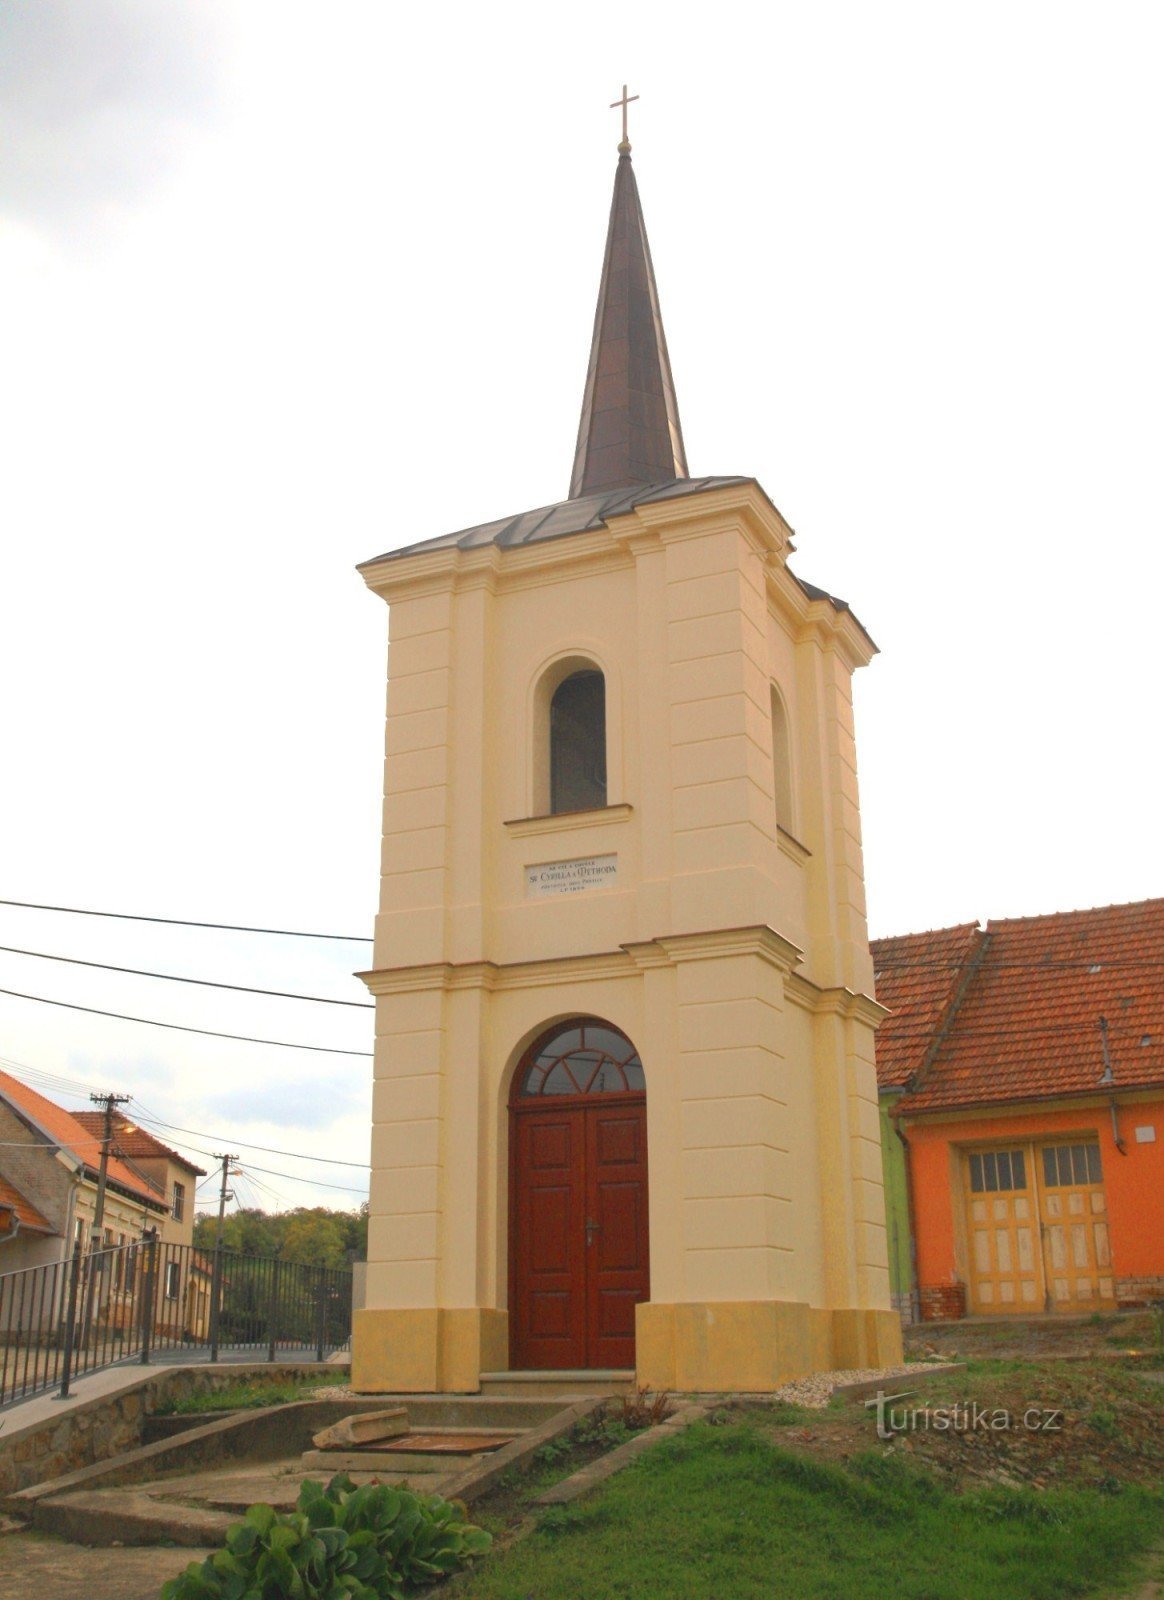 Prštice - clocher